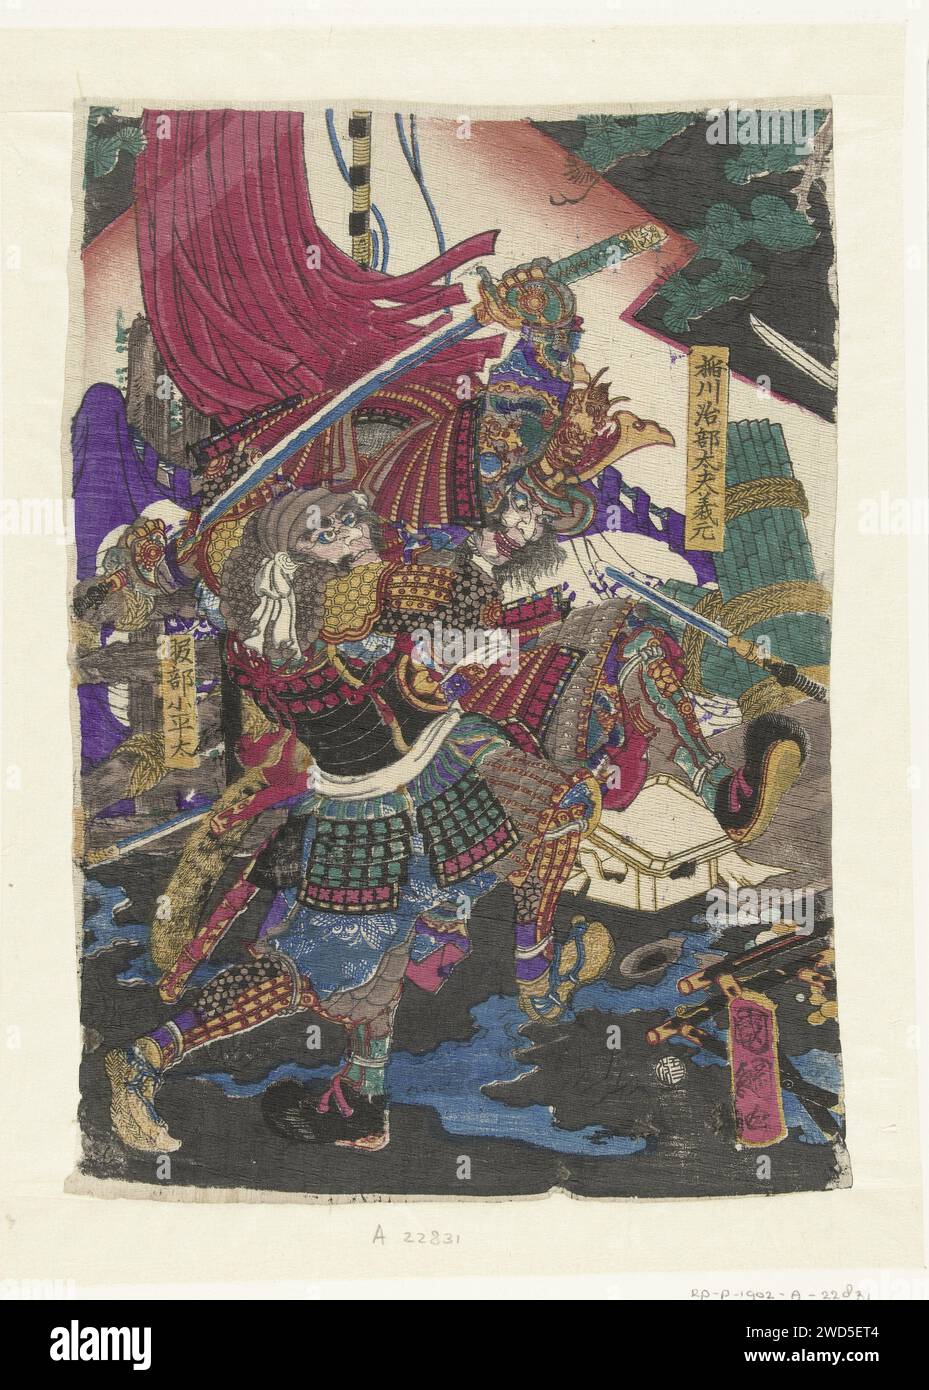 VECHTENDE MANNEN, UTAGAWA KUNITSUNA, 1865 stampa due samurai, combattendo con le spade; sinistra e in alto a destra dei rami di pino. Giappone carta crespata color legno intagliato hacking e spremute armi: Spada (+ durante la battaglia) Foto Stock